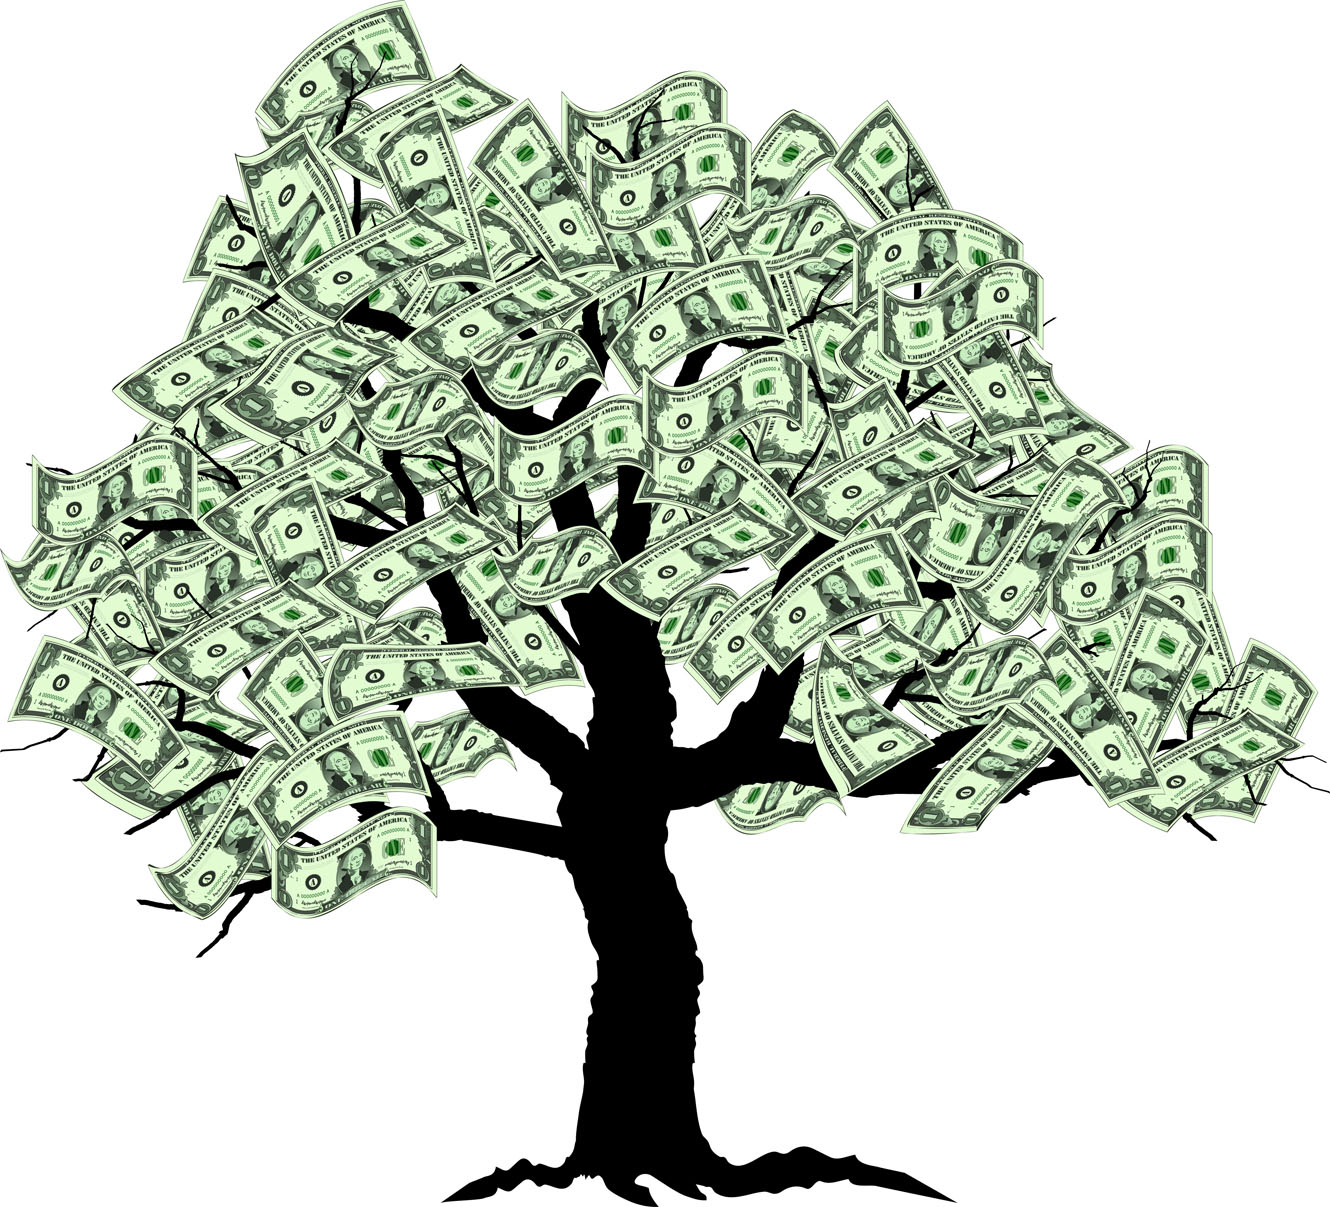 Money Tree Clipart Image Mone